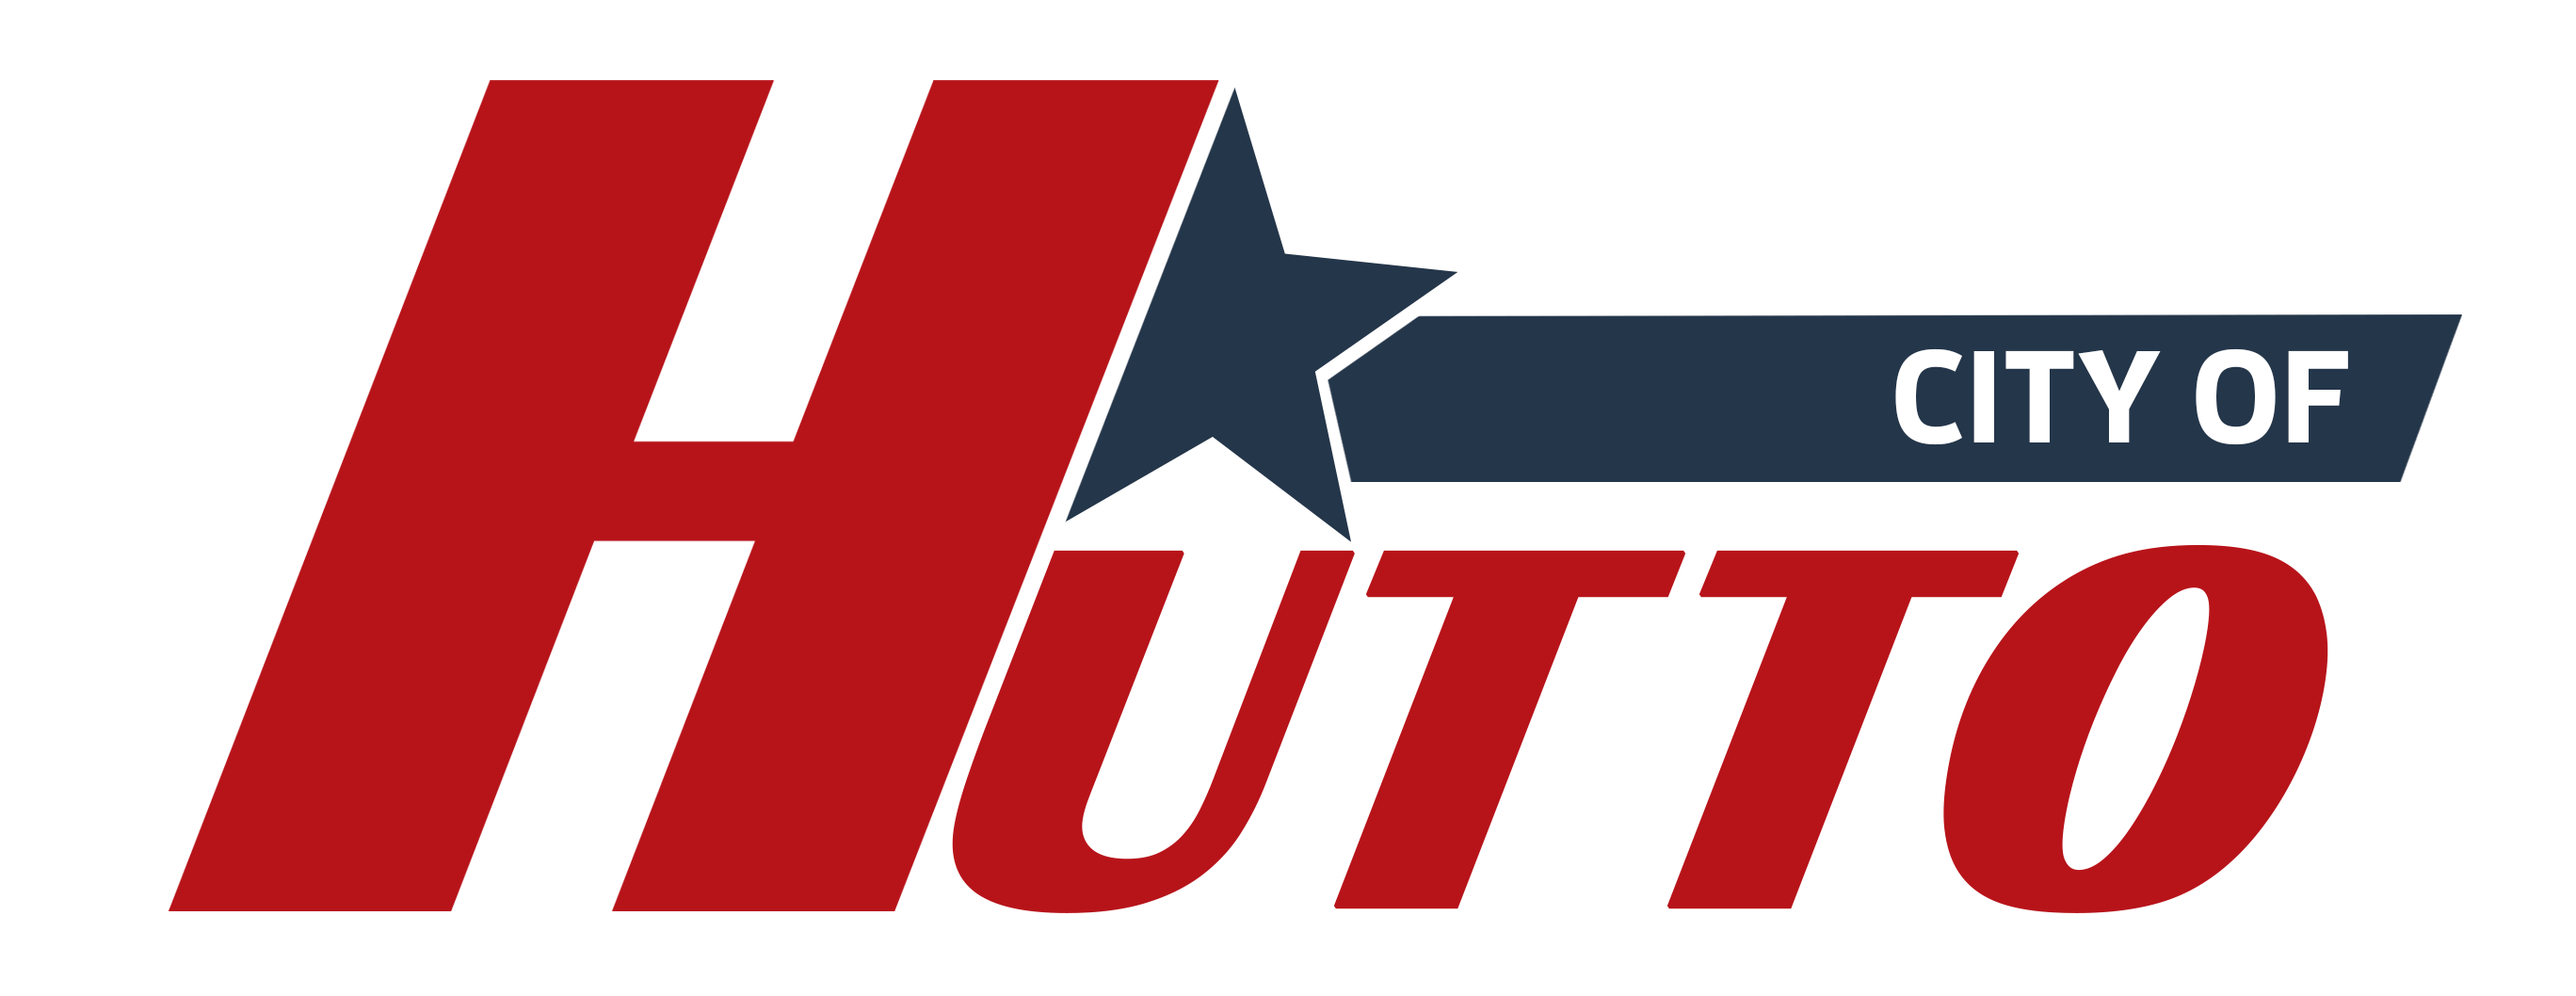 Hutto Logo_2018 New (002)